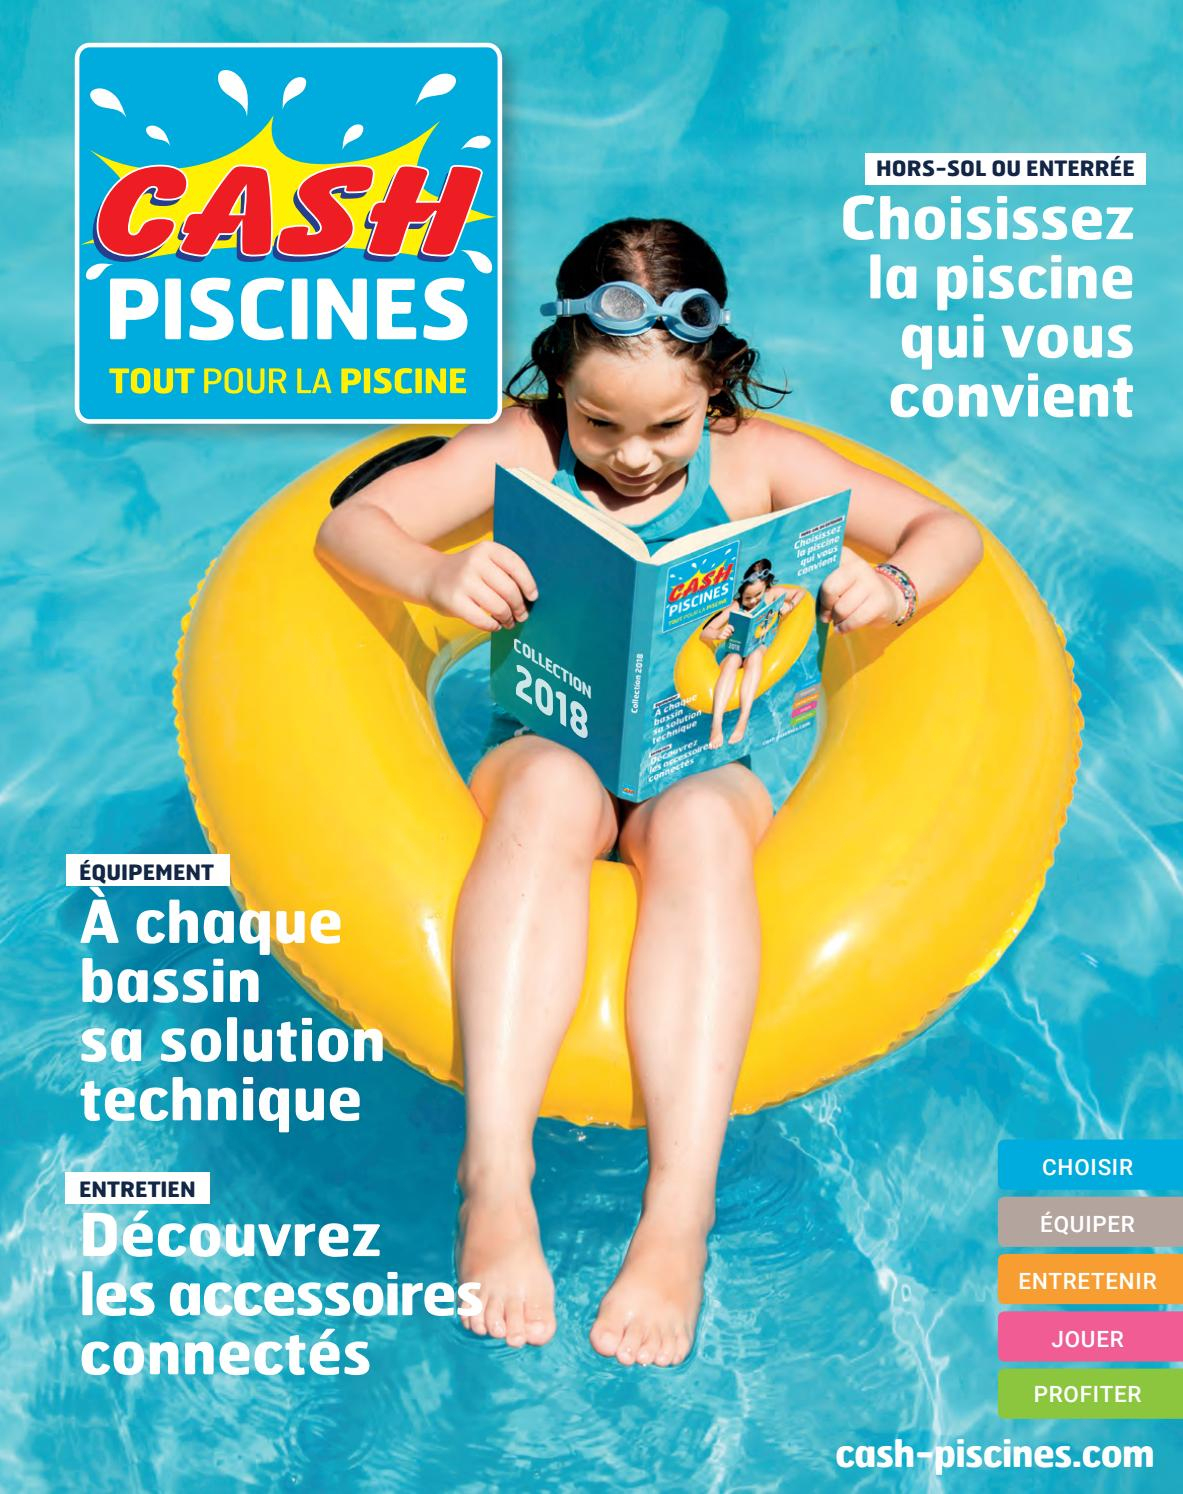 Catalogue Cash Piscine 2018 By Octave Octave - Issuu à Cash Piscine Pierrelatte